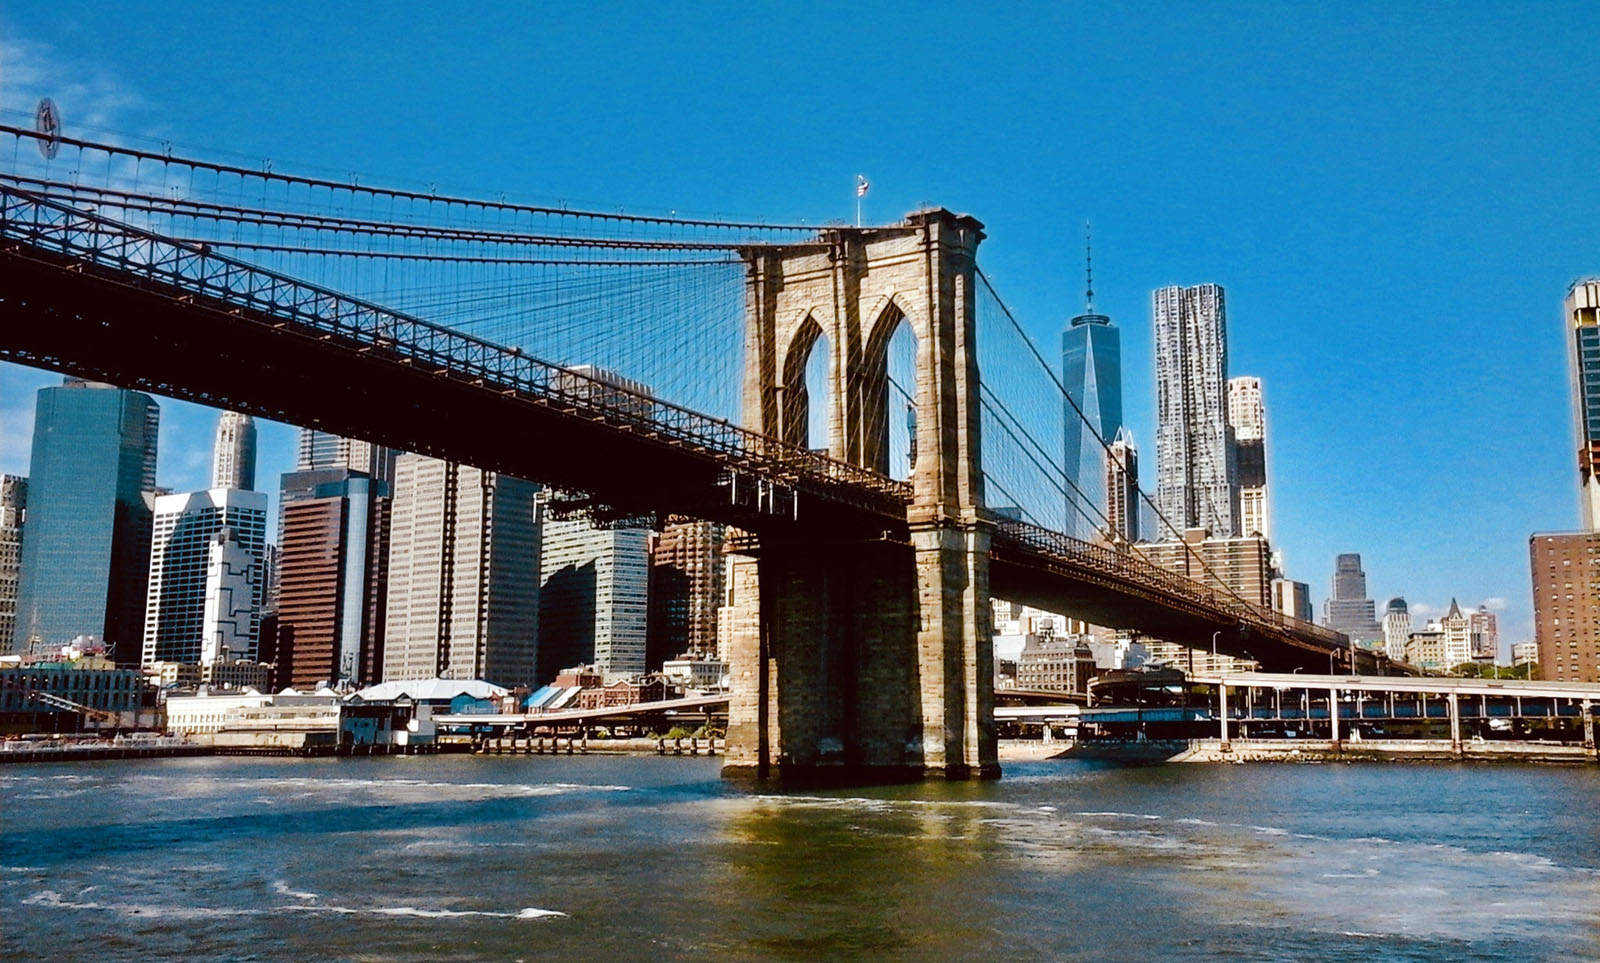 Per dimostrare ai newyorkesi che era sicuro, il ponte di Brooklyn fu collaudato da una sfilata di pesanti animali esotici: elefanti, dromedari e cammelli. Ecco come fu realizzato il primo ponte sospeso in acciaio, inaugurato nel 1883.